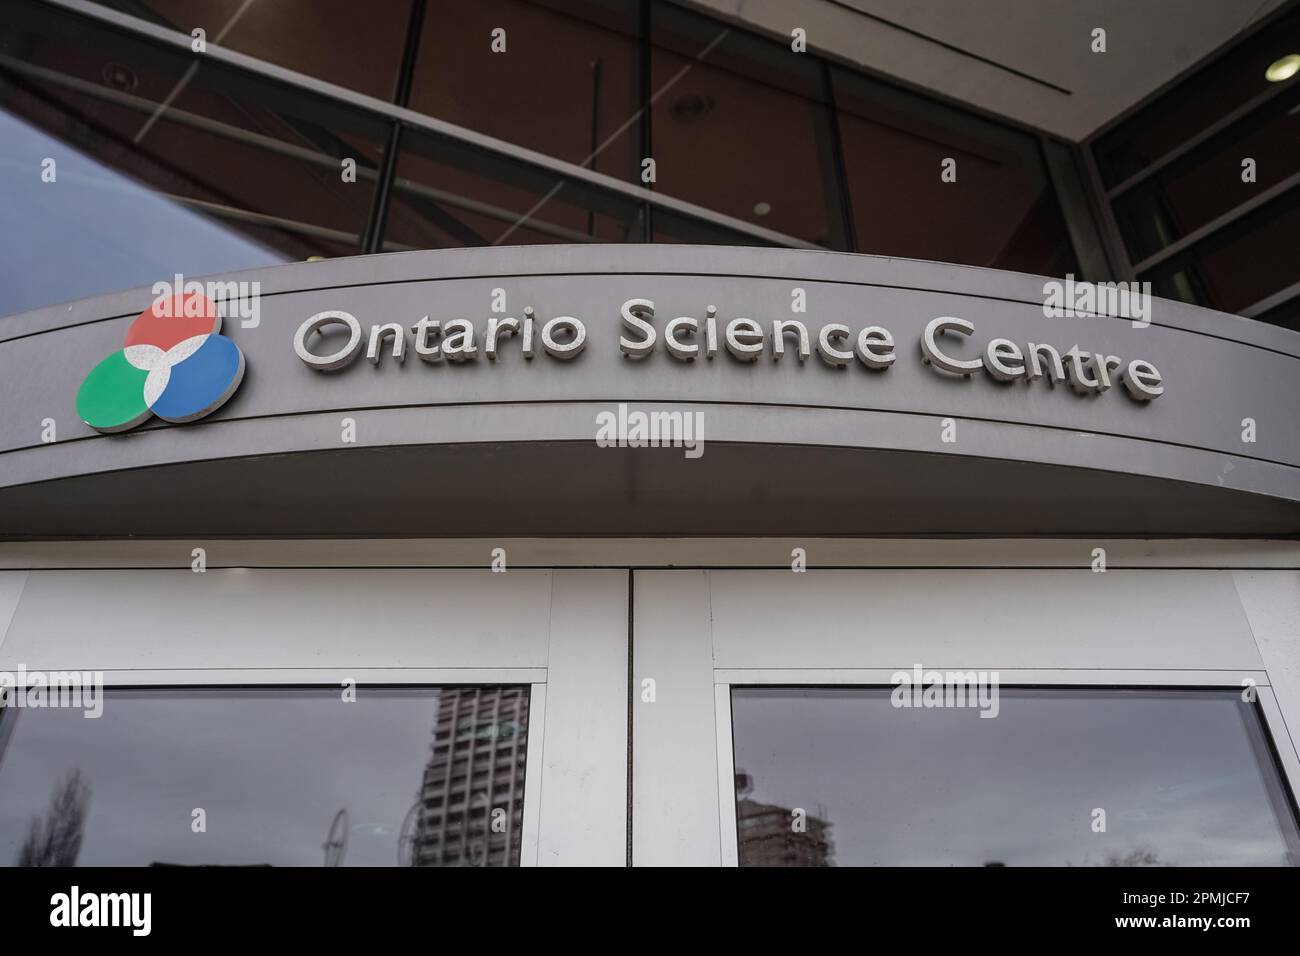 Ontario science centre exterior, Toronto, Ontario, Canada Stock Photo